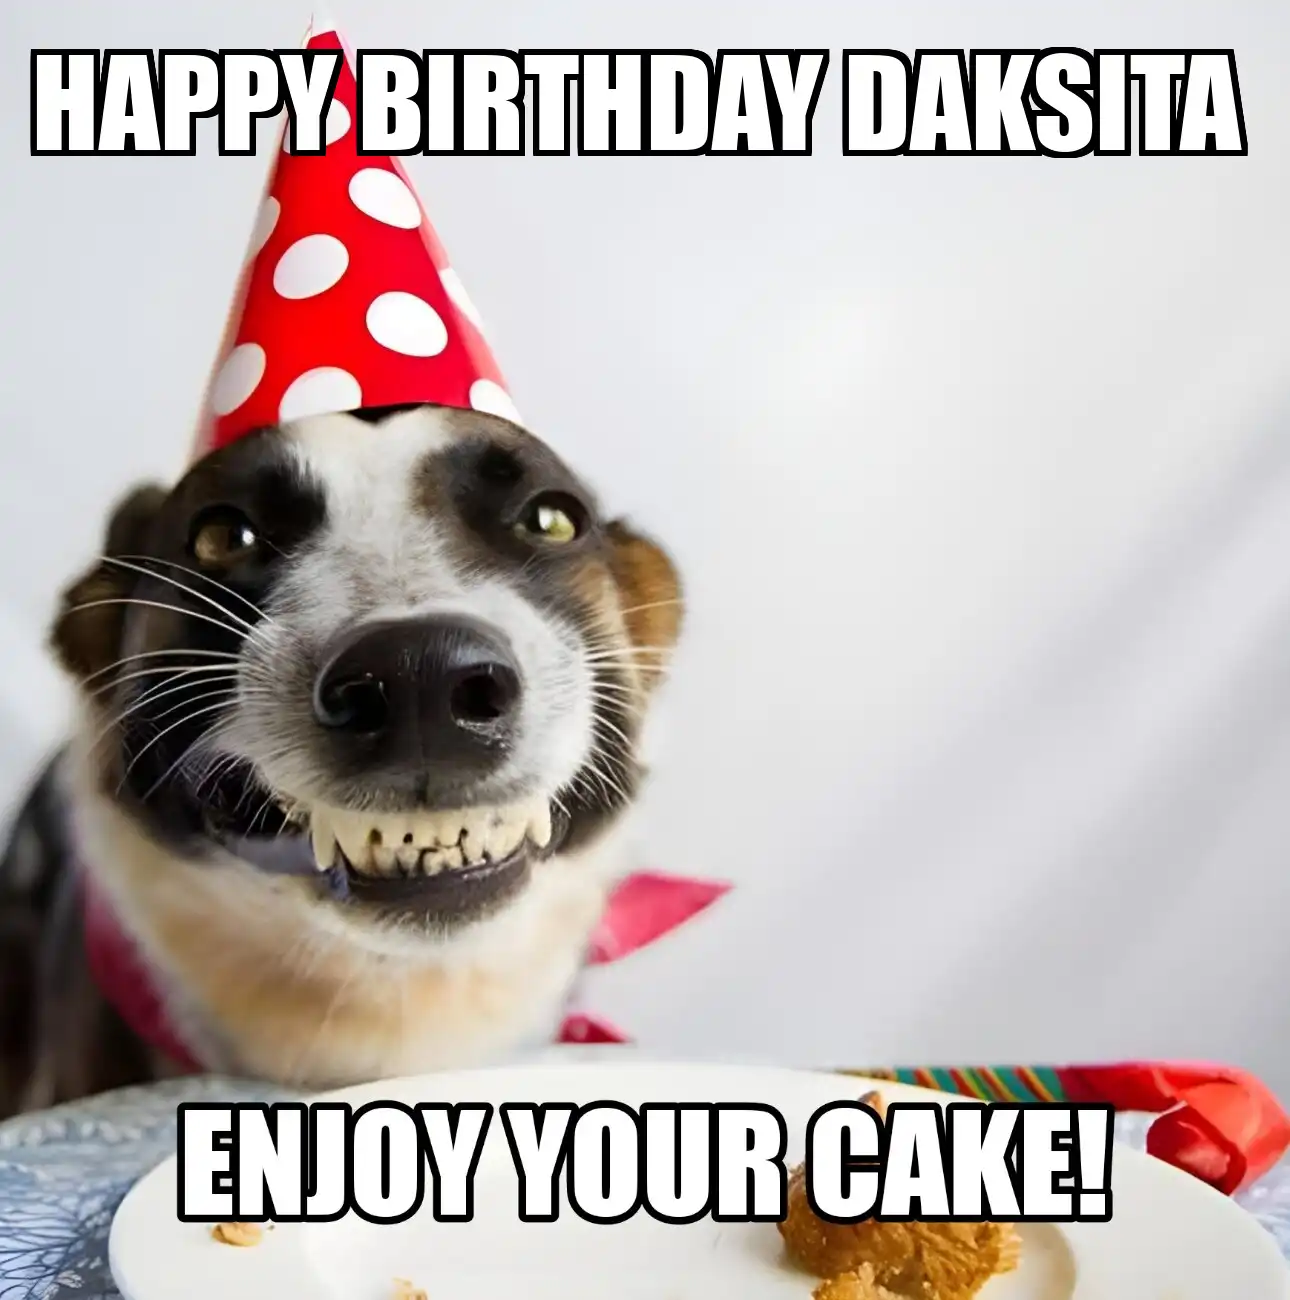 Happy Birthday Daksita Enjoy Your Cake Dog Meme